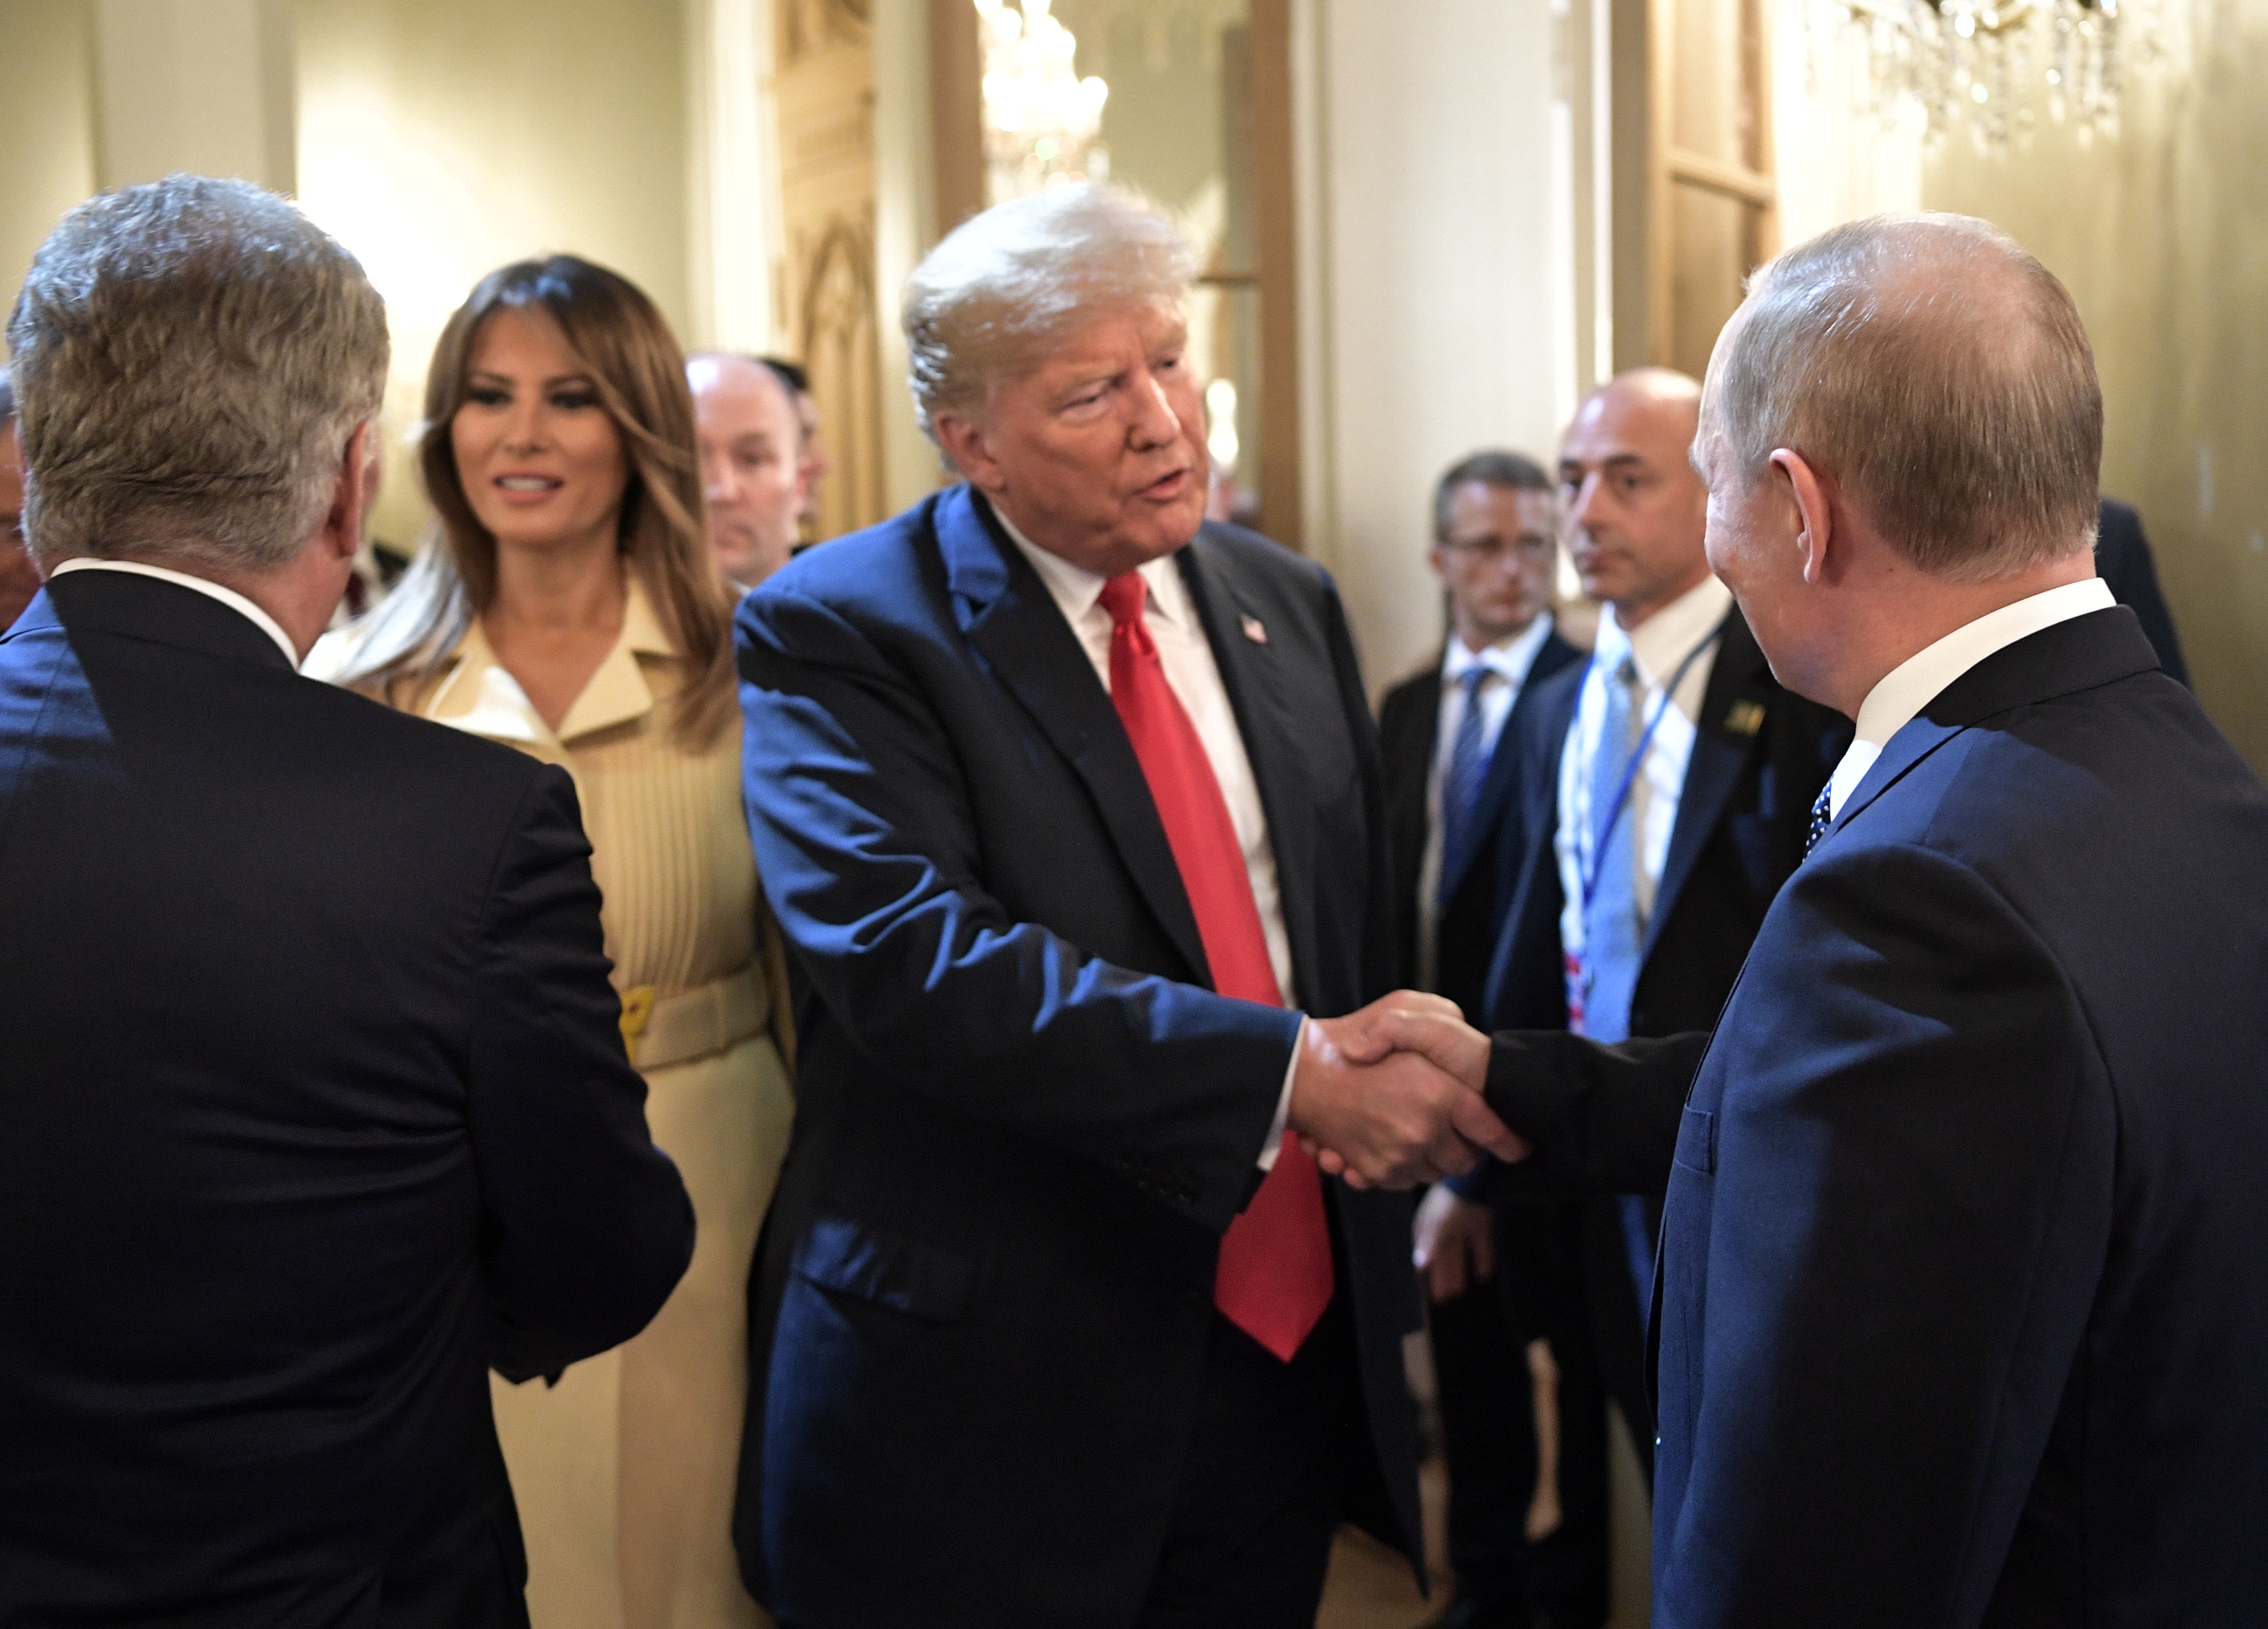 Трамп переговоры. Встреча Путина и Трампа в Хельсинки 2018.